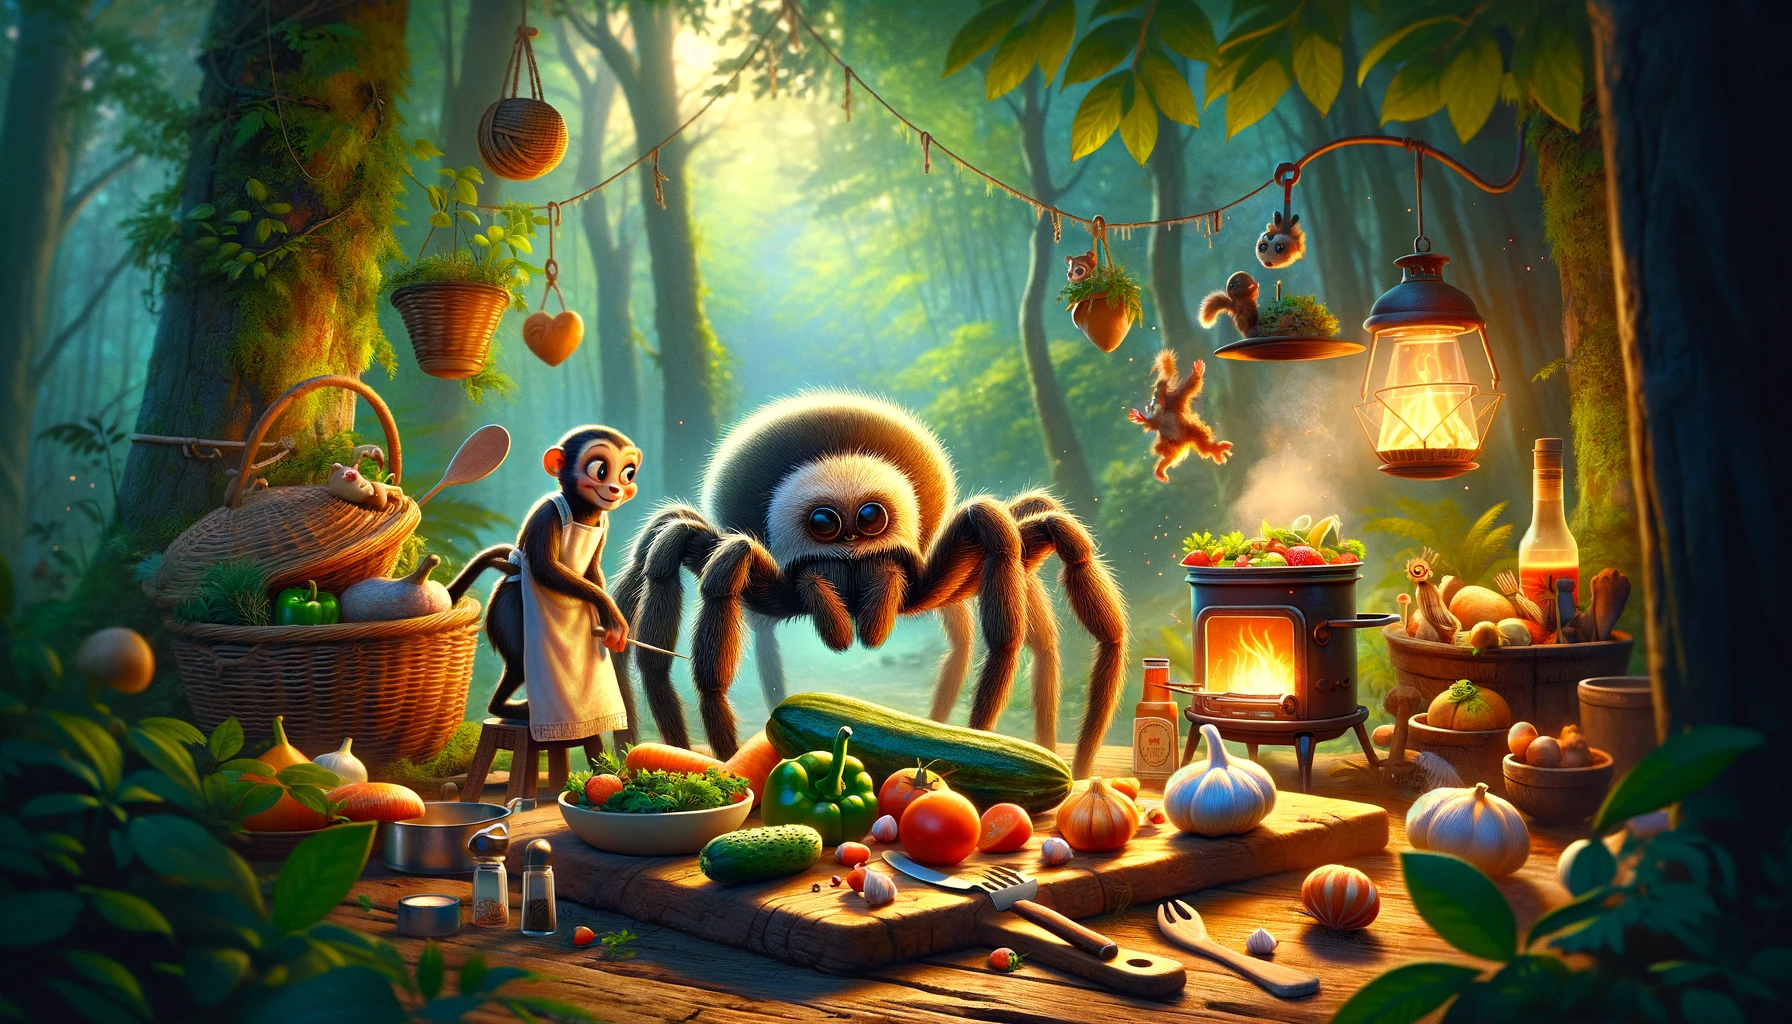 Das Bild zeigt Küwalda, die freundliche Spinne, und Petra, das lustige Äffchen, wie sie gemeinsam in der Küche stehen und kochen. Sie sind umgeben von frischem Gemüse, während sie lachen und Rezepte austauschen, was ihre beginnende Freundschaft symbolisiert.